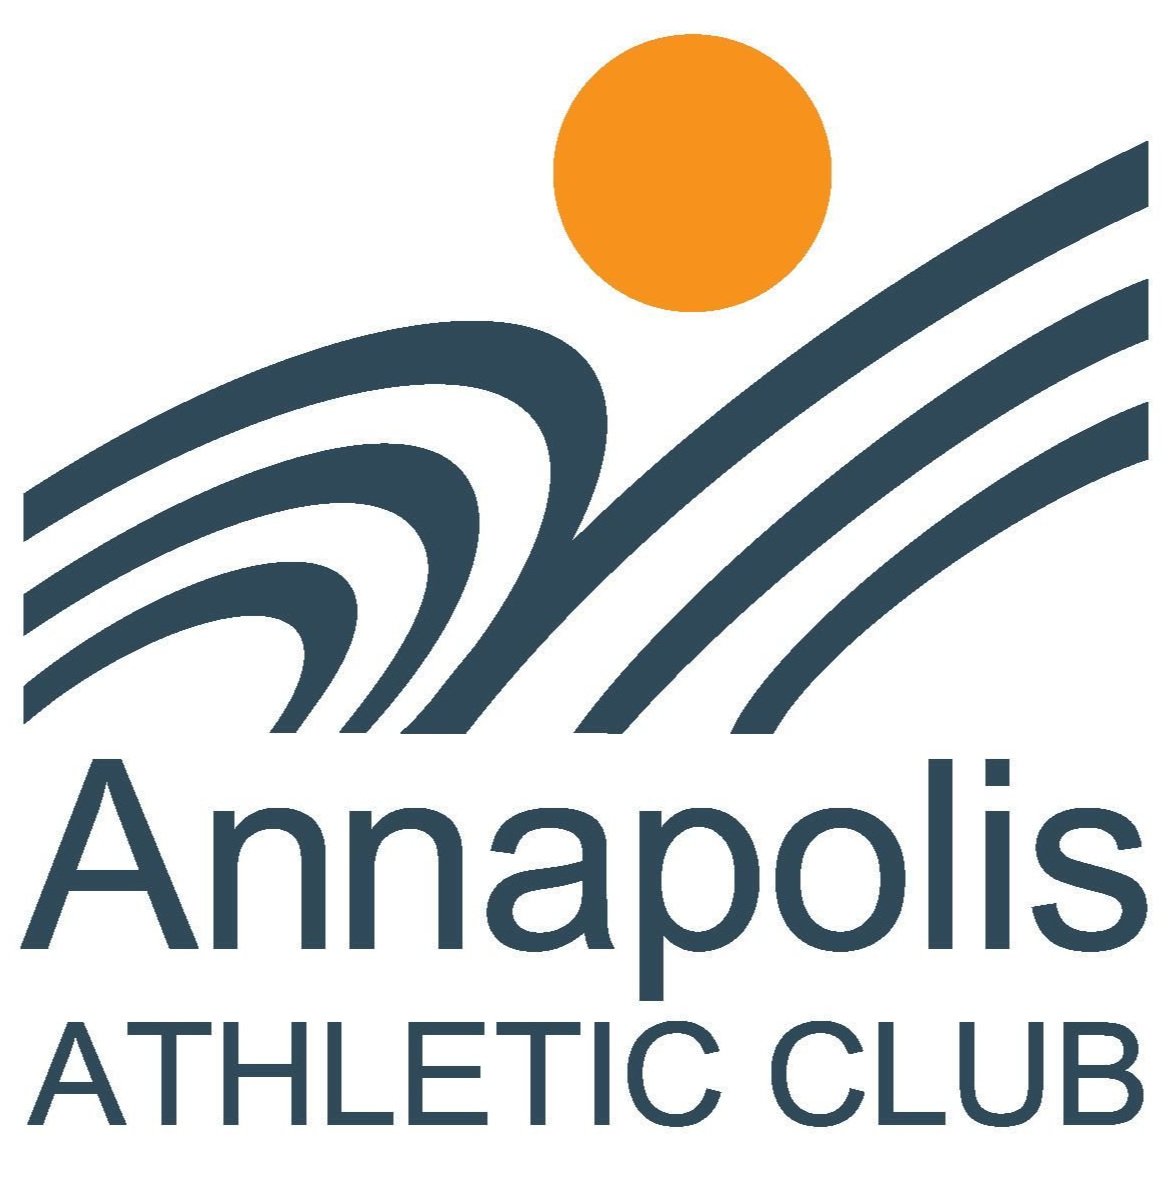 Annapolis Athletic Club